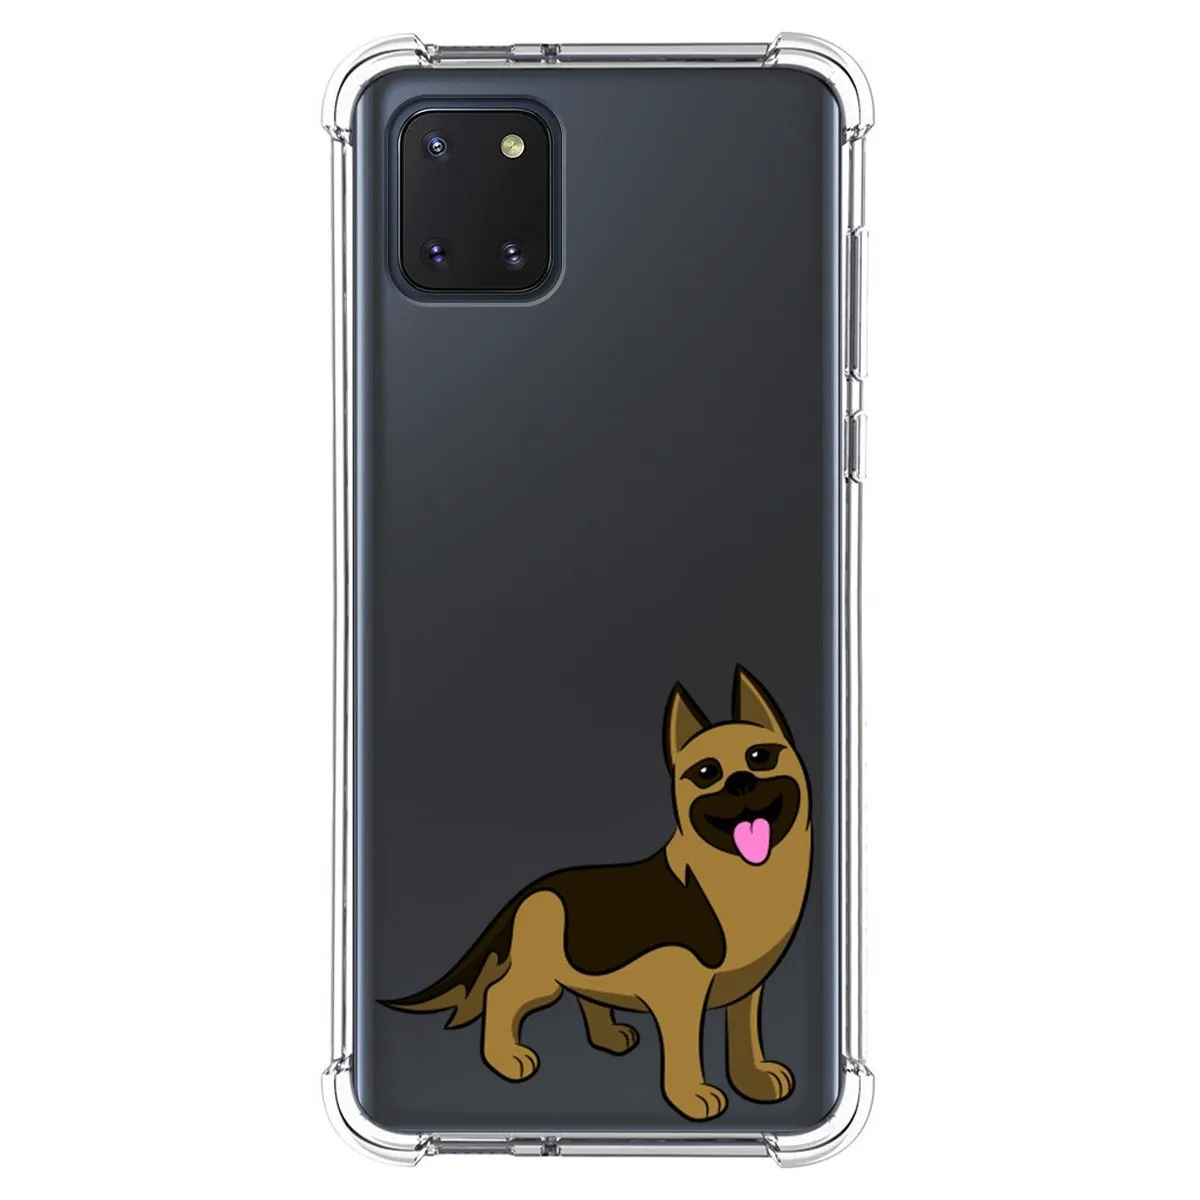 Funda Silicona Antigolpes para Samsung Galaxy Note 10 Lite diseño Perros 03 Dibujos